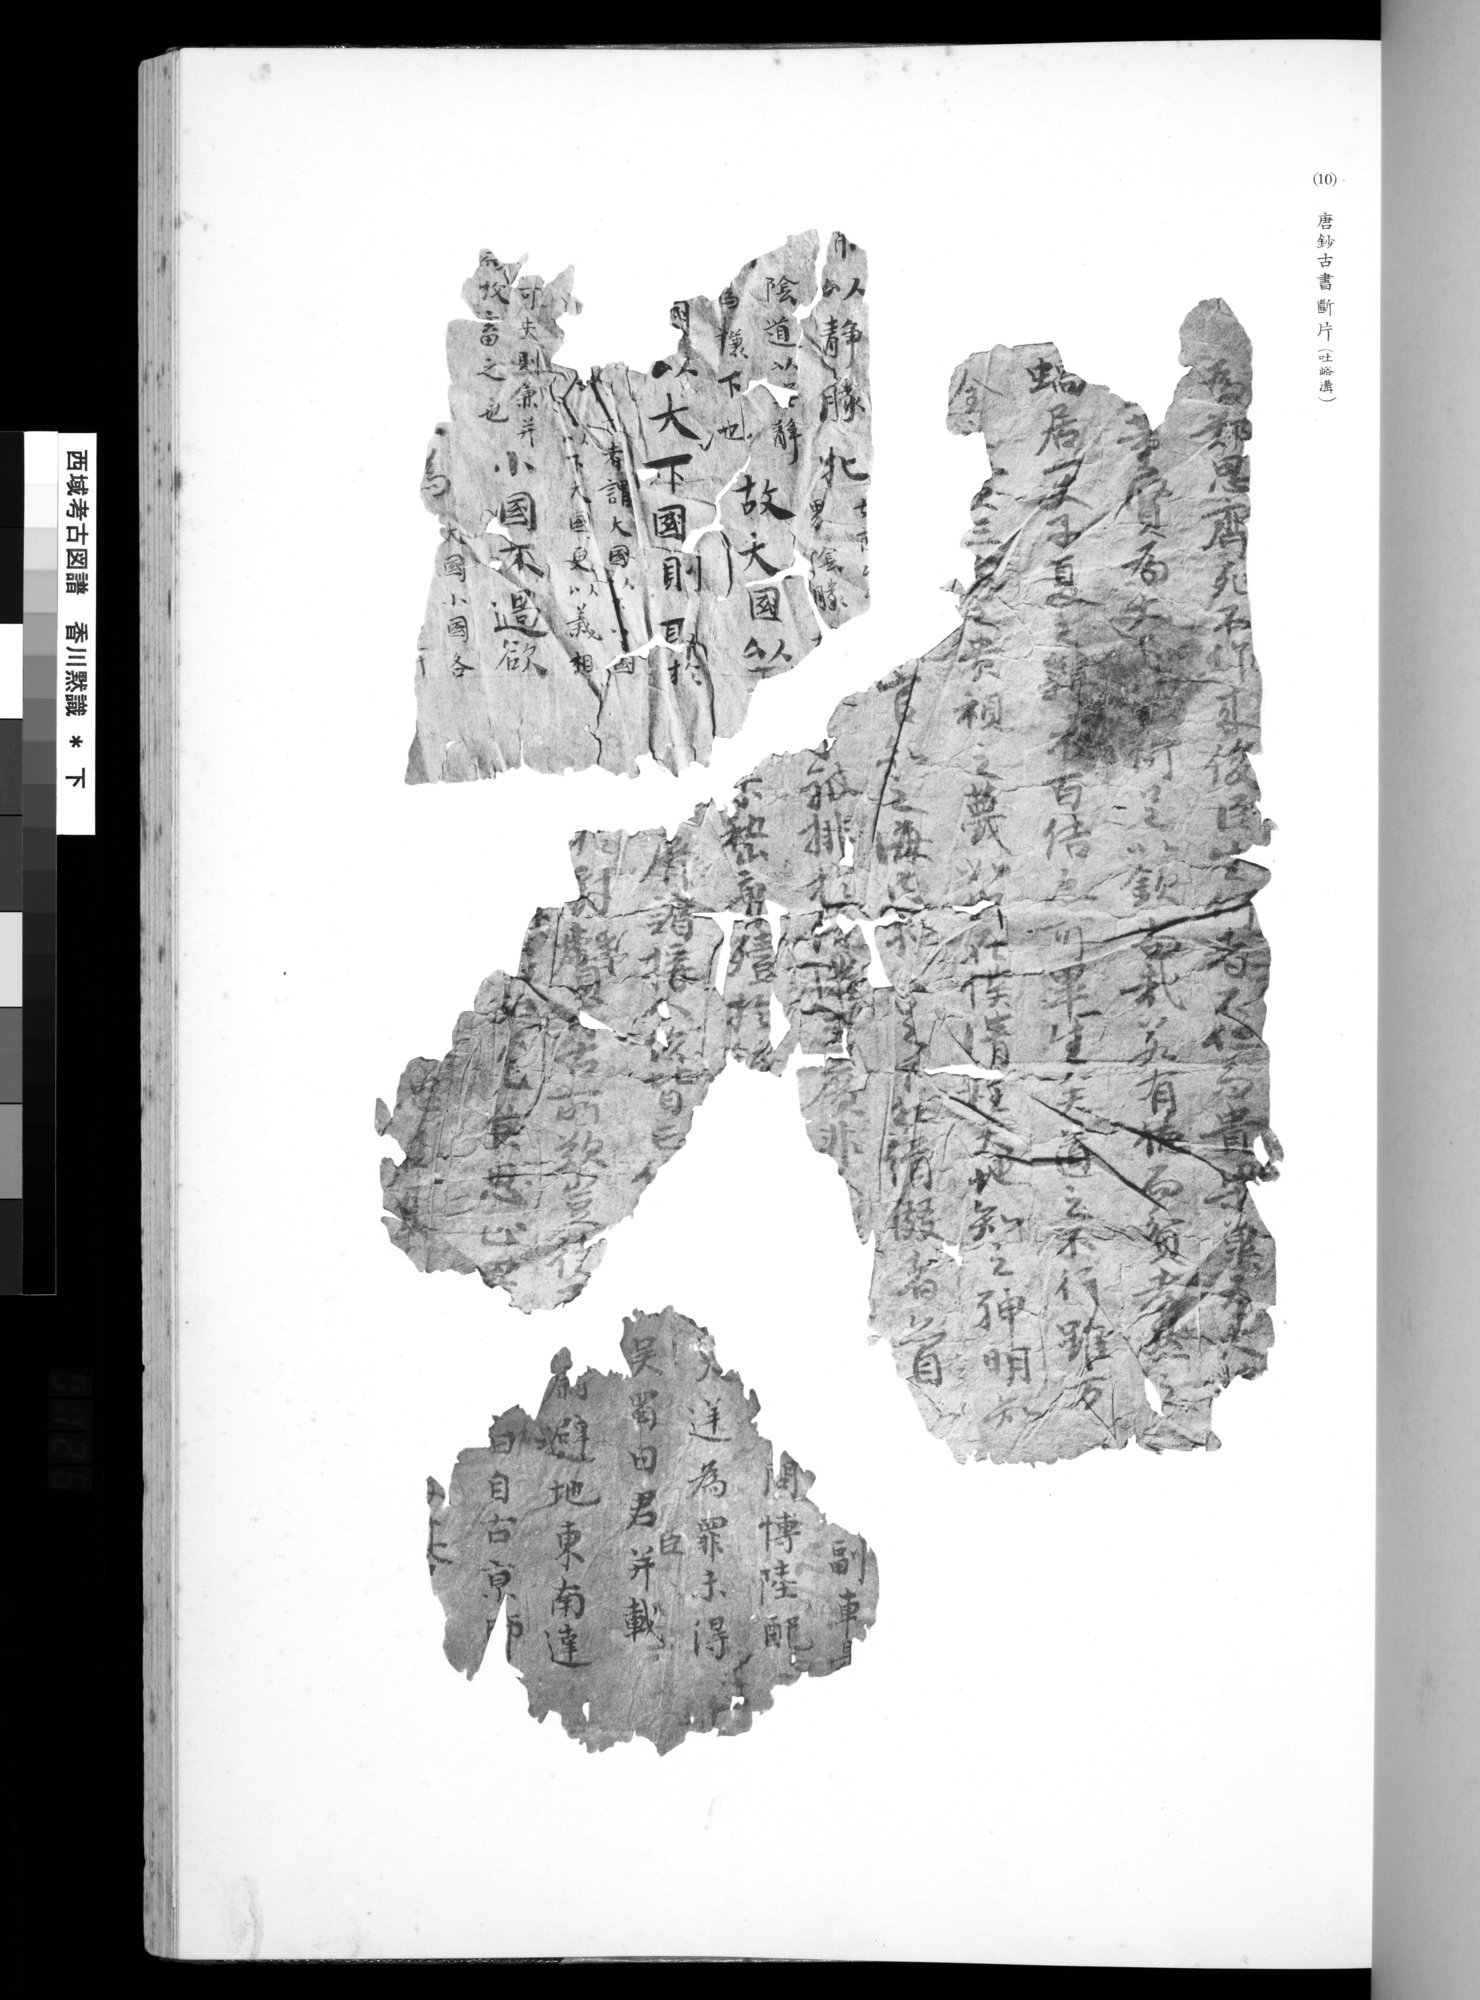 西域考古図譜 : vol.2 / Page 249 (Grayscale High Resolution Image)